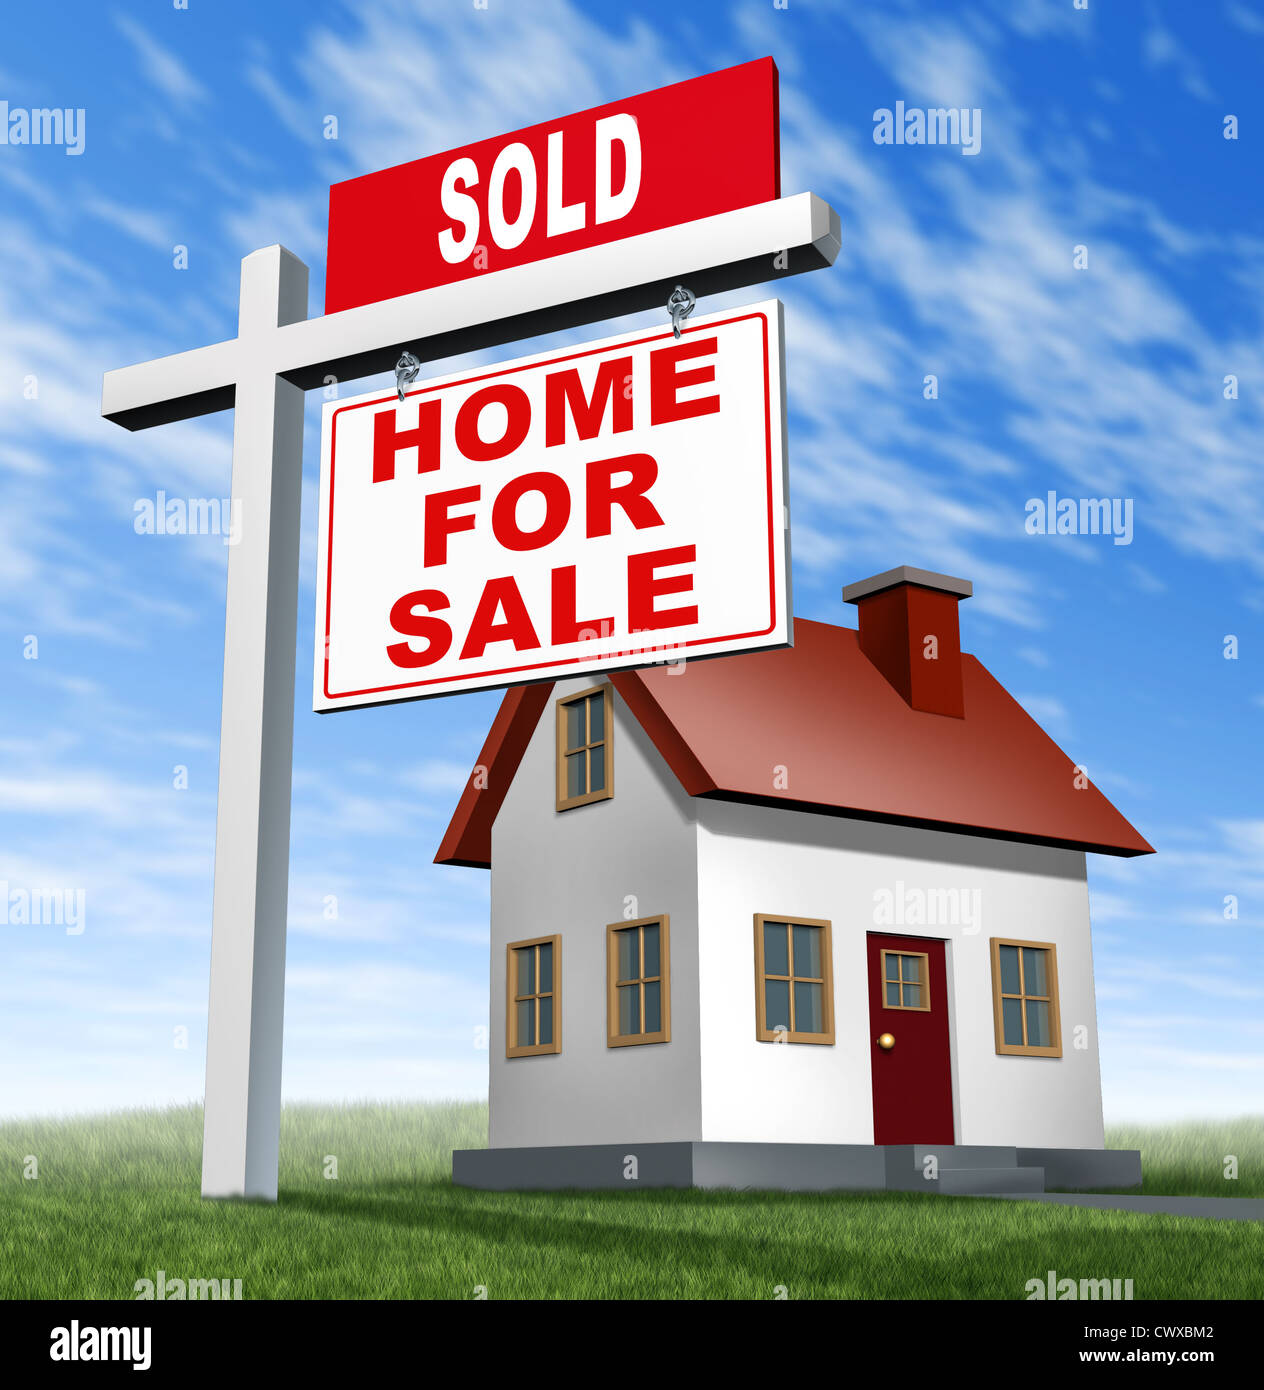 Verkauft nach Hause für Verkauf Zeichen und Haus als ein Real Estate Geschäft Finanzkonzept auf niedrigen erschwinglichen home Hypothekendarlehen zu verkaufen und kaufen Ihre Familie Traumhaus mit einem Agenten, um den Verkauf zu verhandeln. Stockfoto